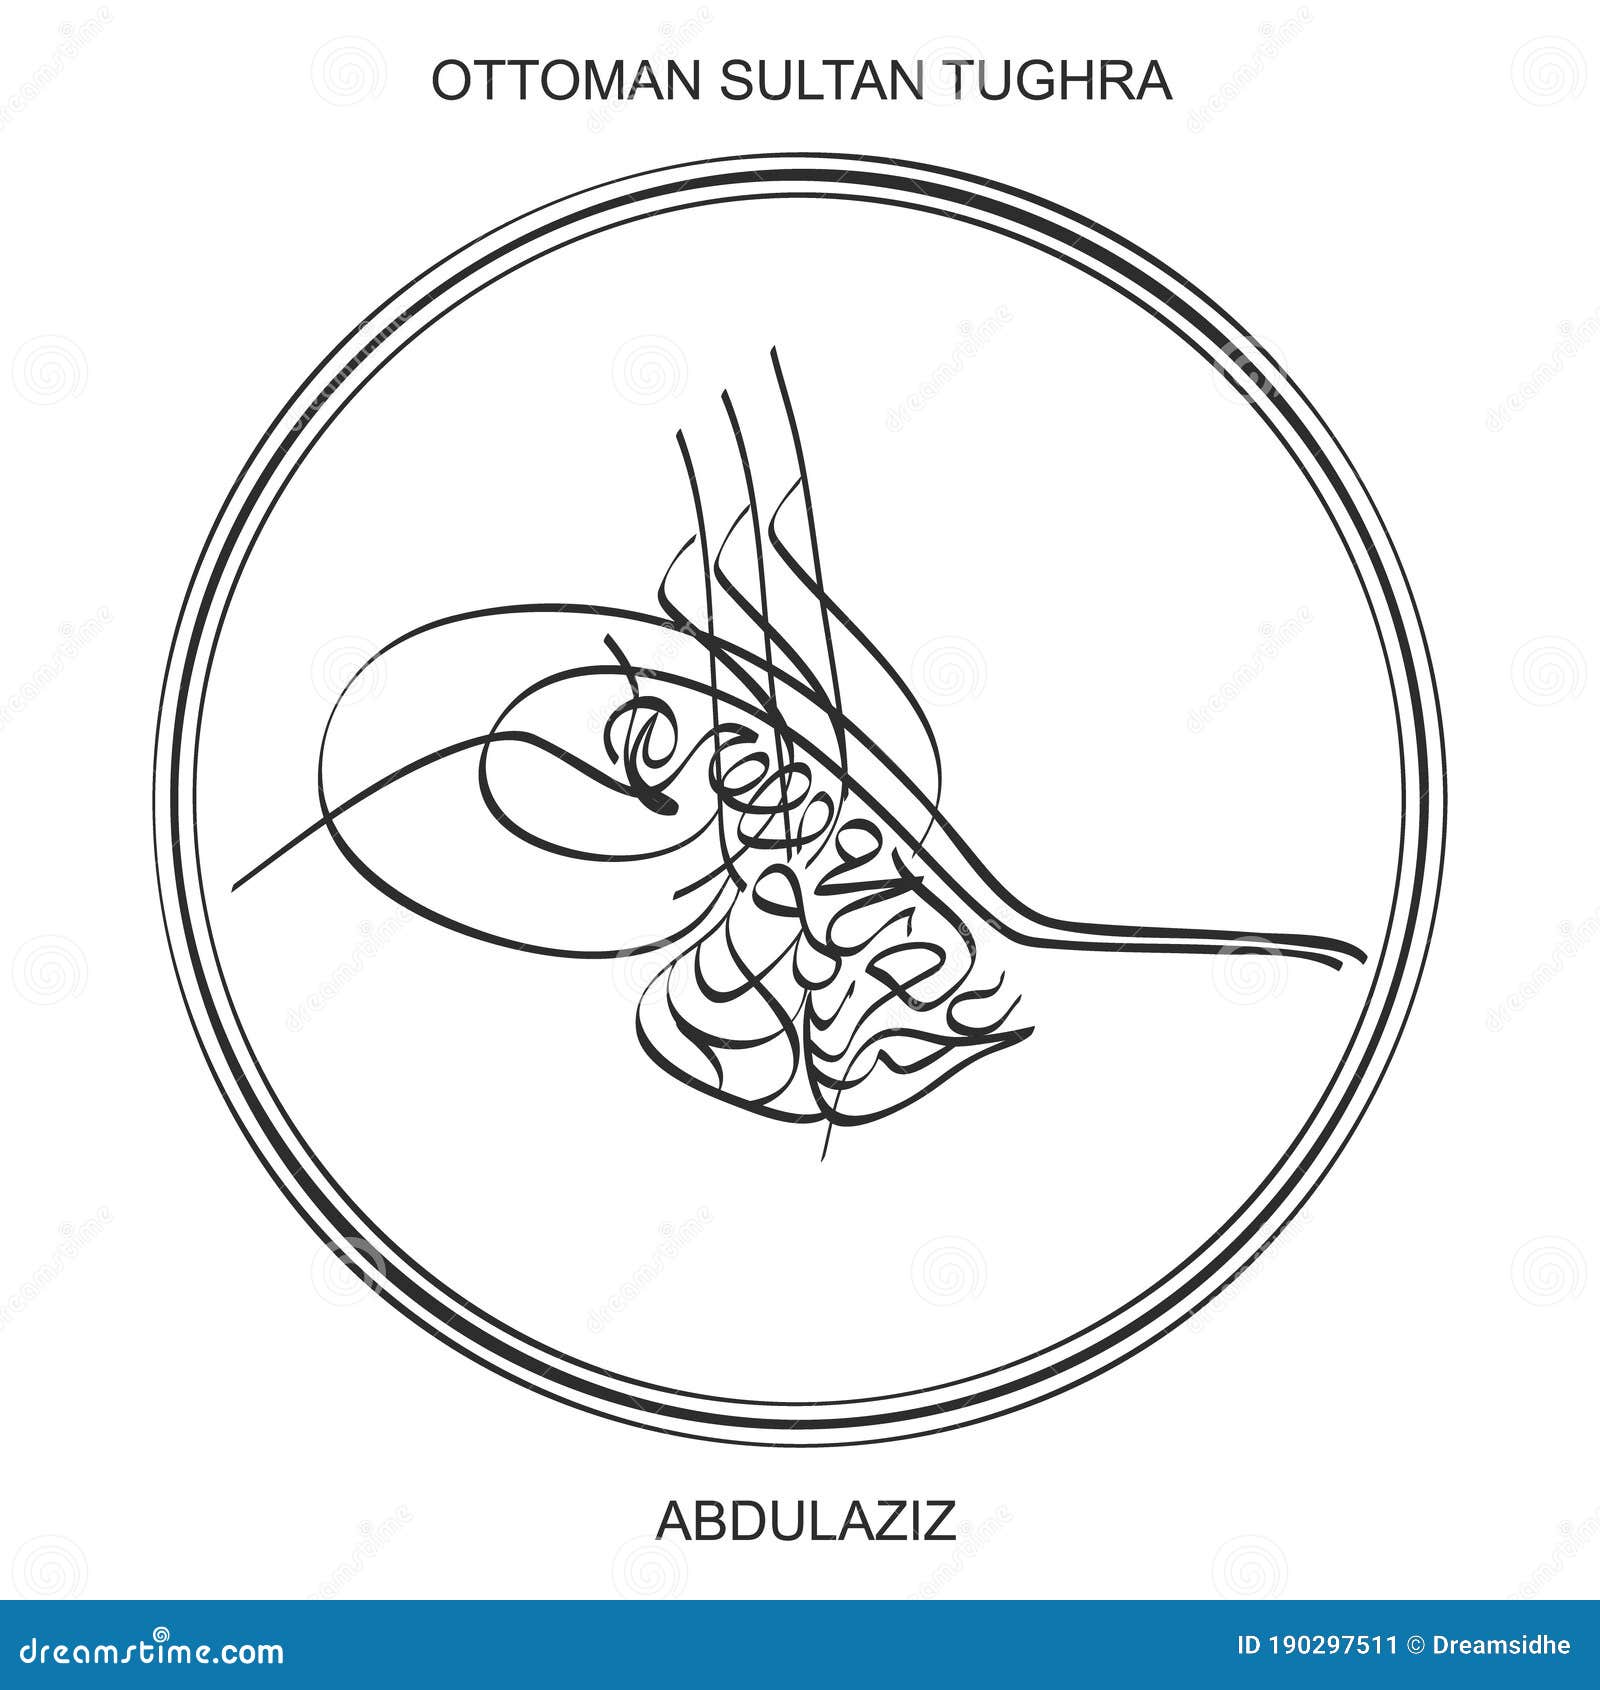 tughra a signature of ottoman sultan abdulaziz